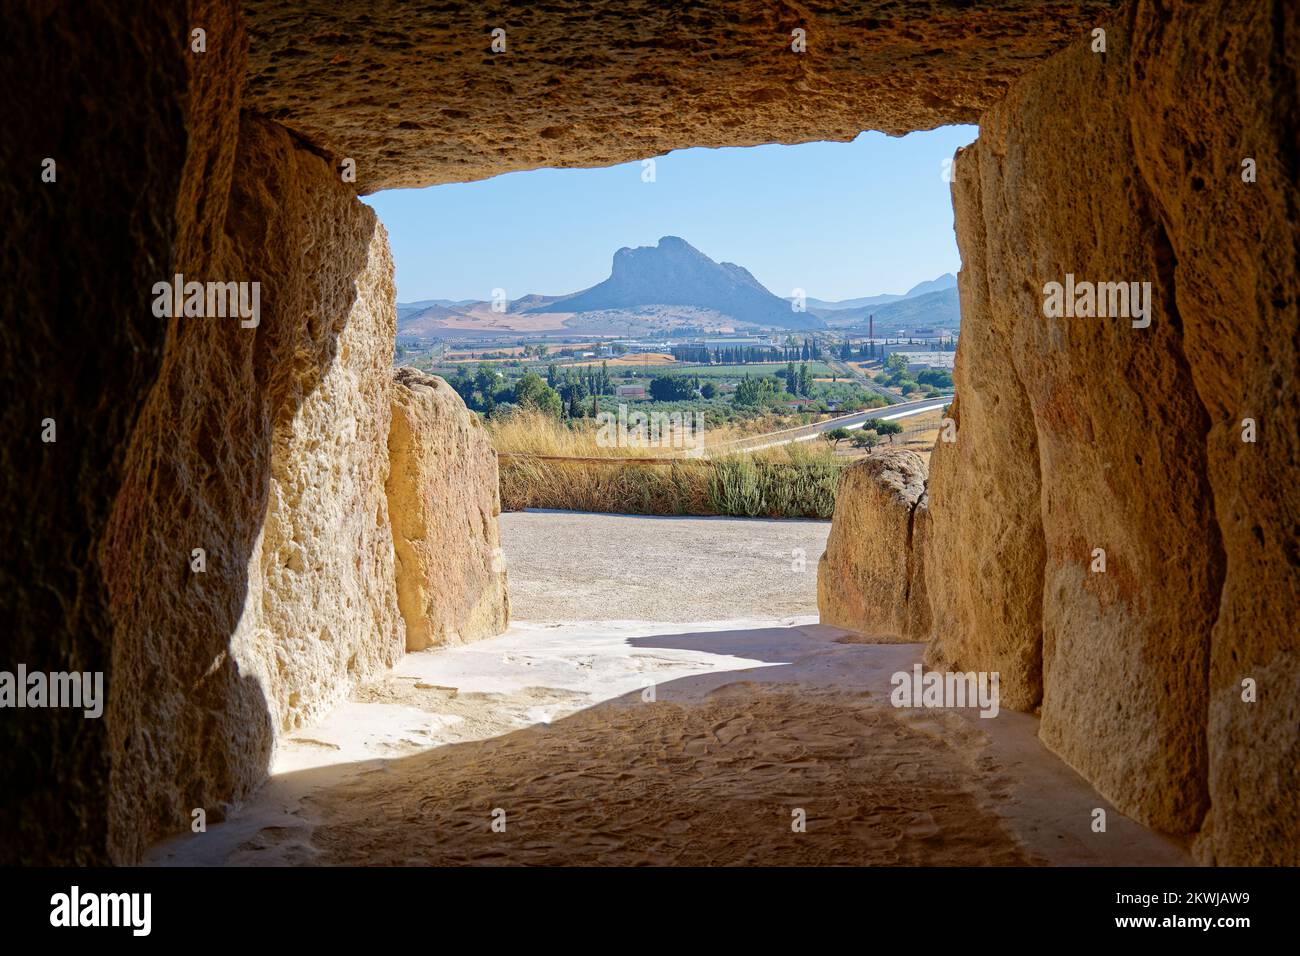 All'interno del monumento megalitico Dolmen in Antequera con il monumento naturale la roccia degli innamorati sullo sfondo. Viaggio turistico in Spagna. Foto Stock